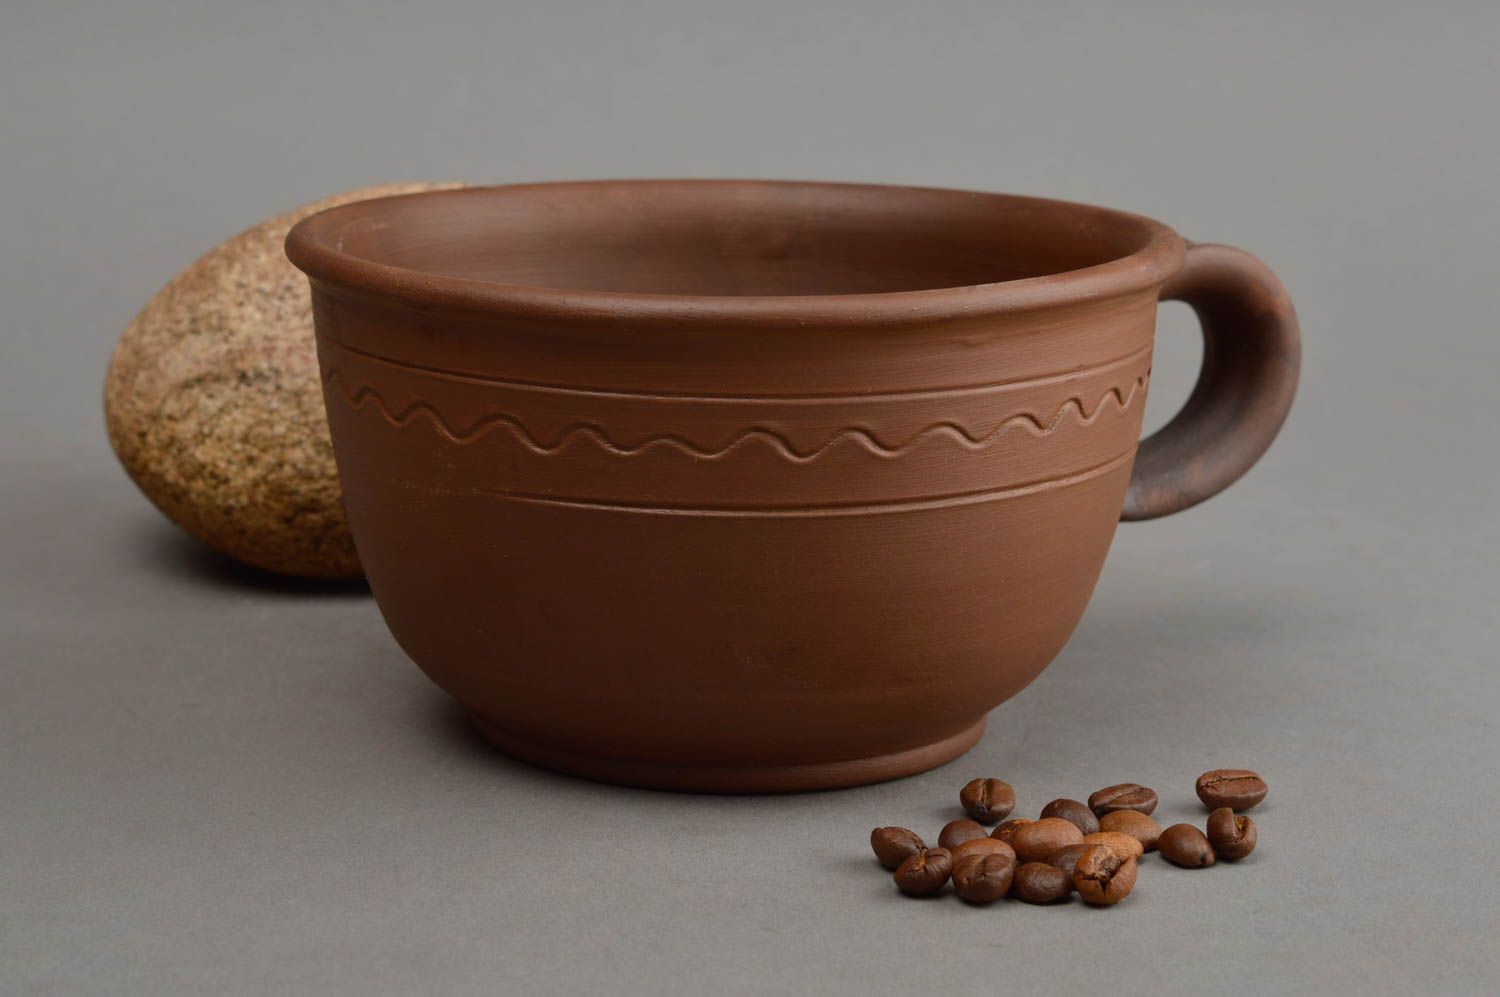 Широкая глиняная чашка ручной работы в технике гончарства красивая коричневая фото 1